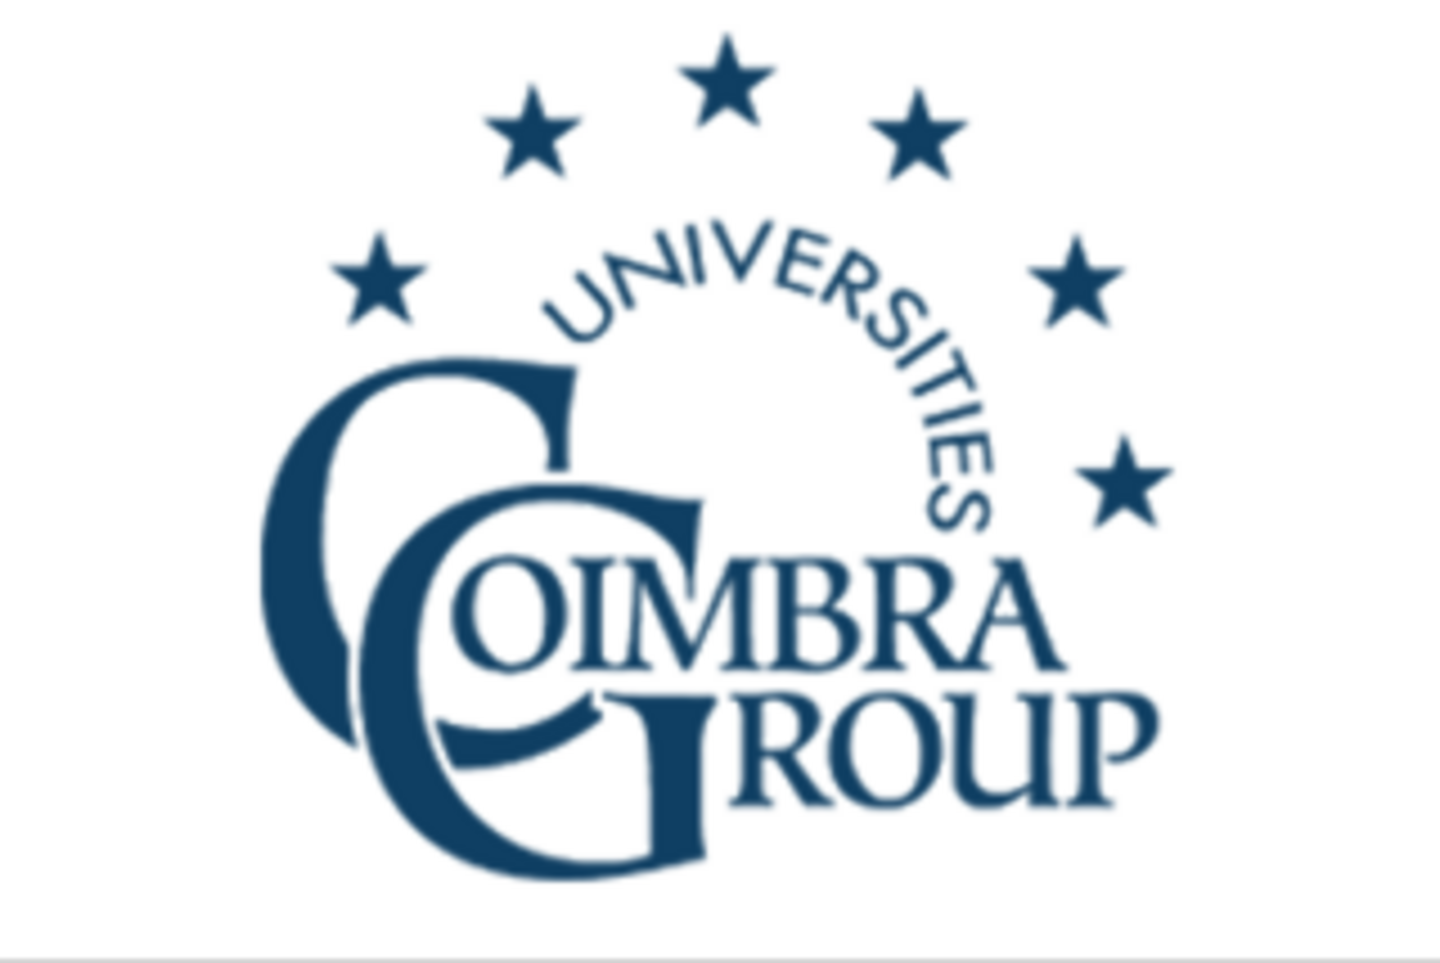 Coimbra Group Logo